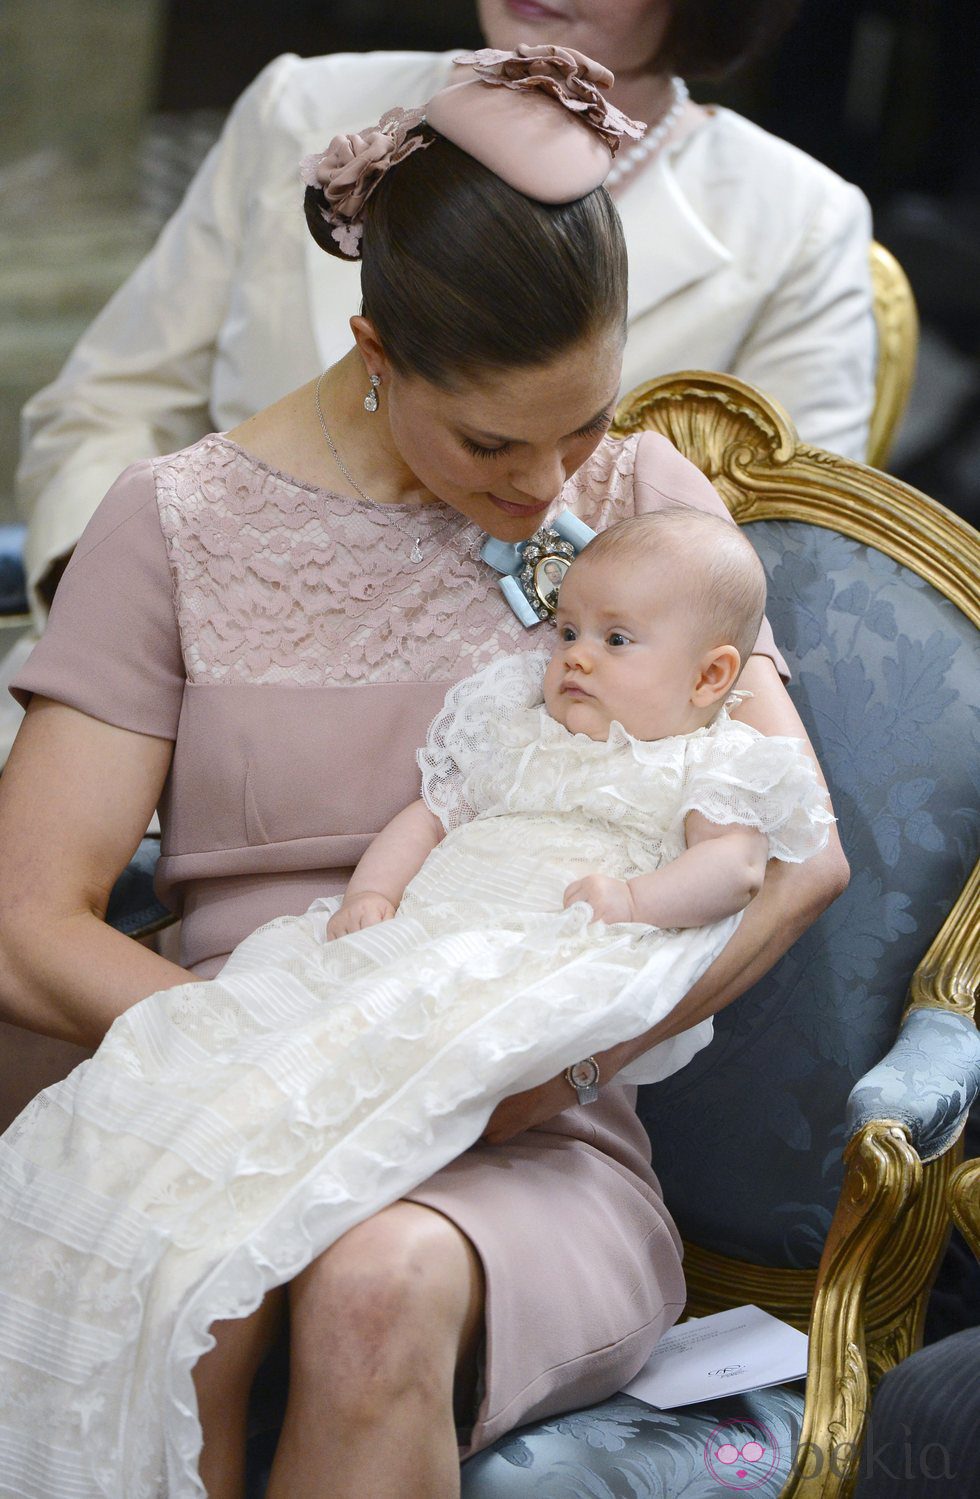 La Princesa Victoria con Estela de Suecia en su bautizo